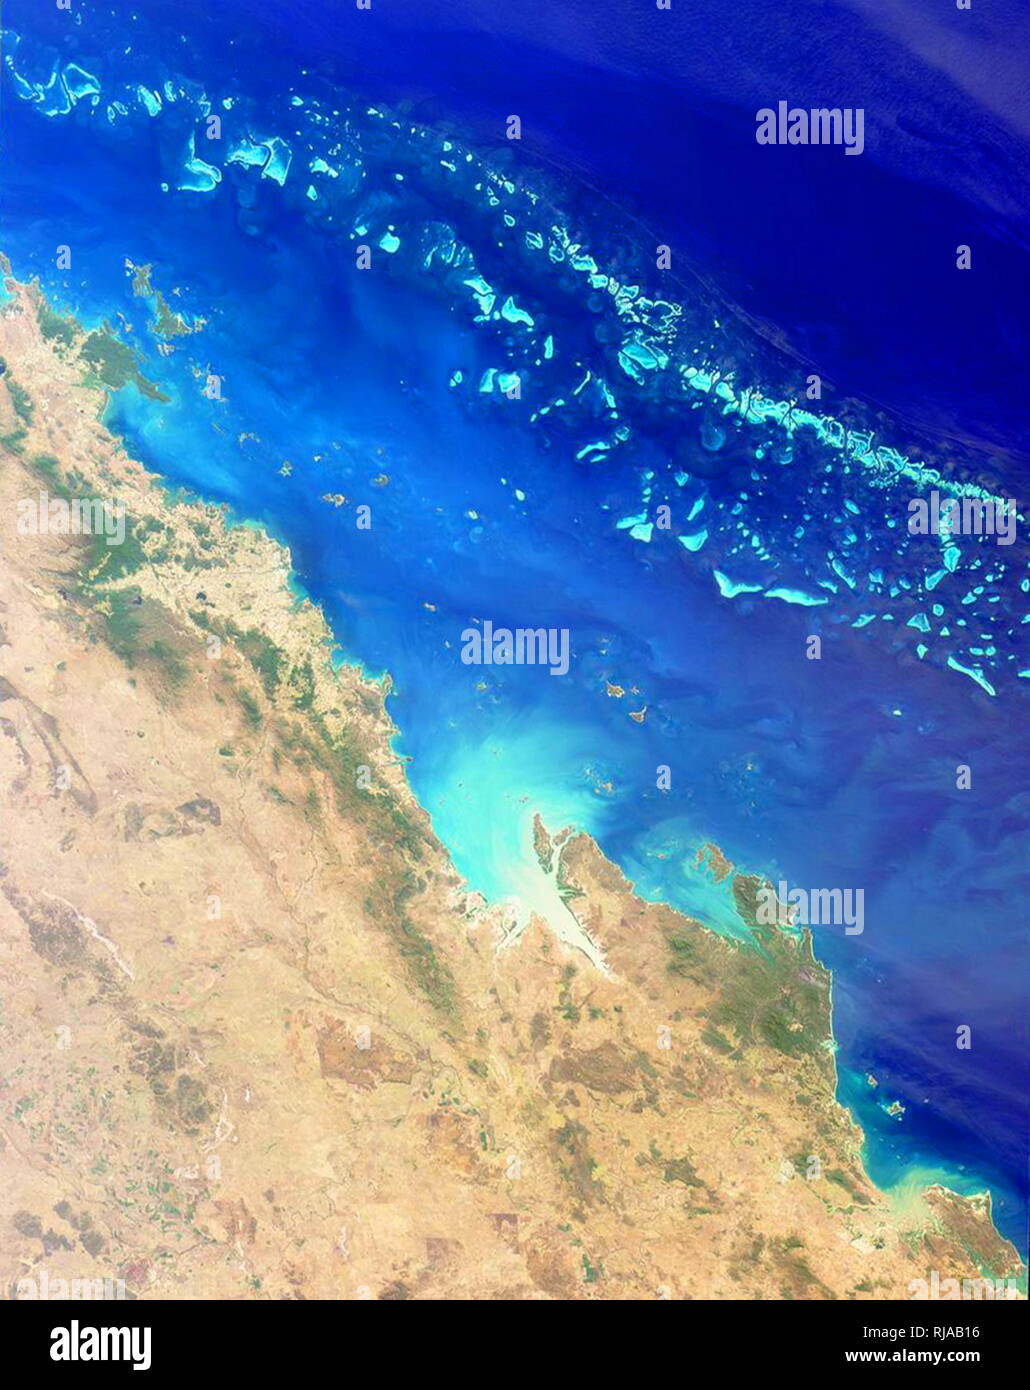 La Grande Barrière de Corail vu de l'orbite de la terre en 2001. Le récif  s'étend sur 2 000 kilomètres le long de la côte nord-est de l'Australie. Il  n'est pas un